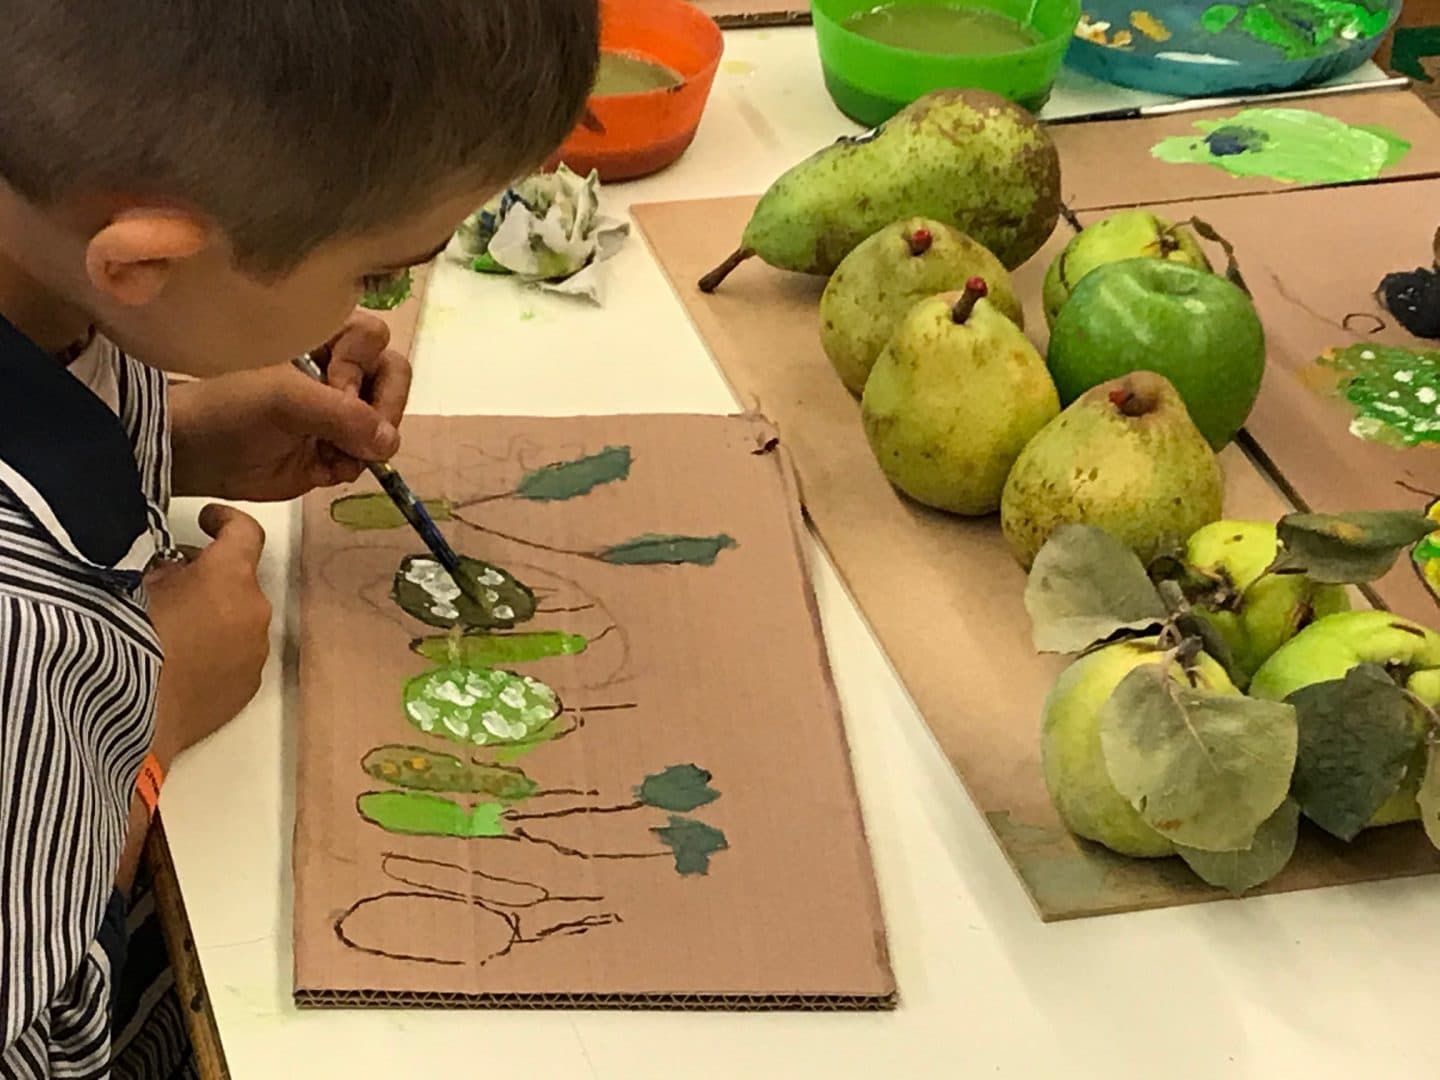 Estudi del color verd a partir de pomes, peres i codonys